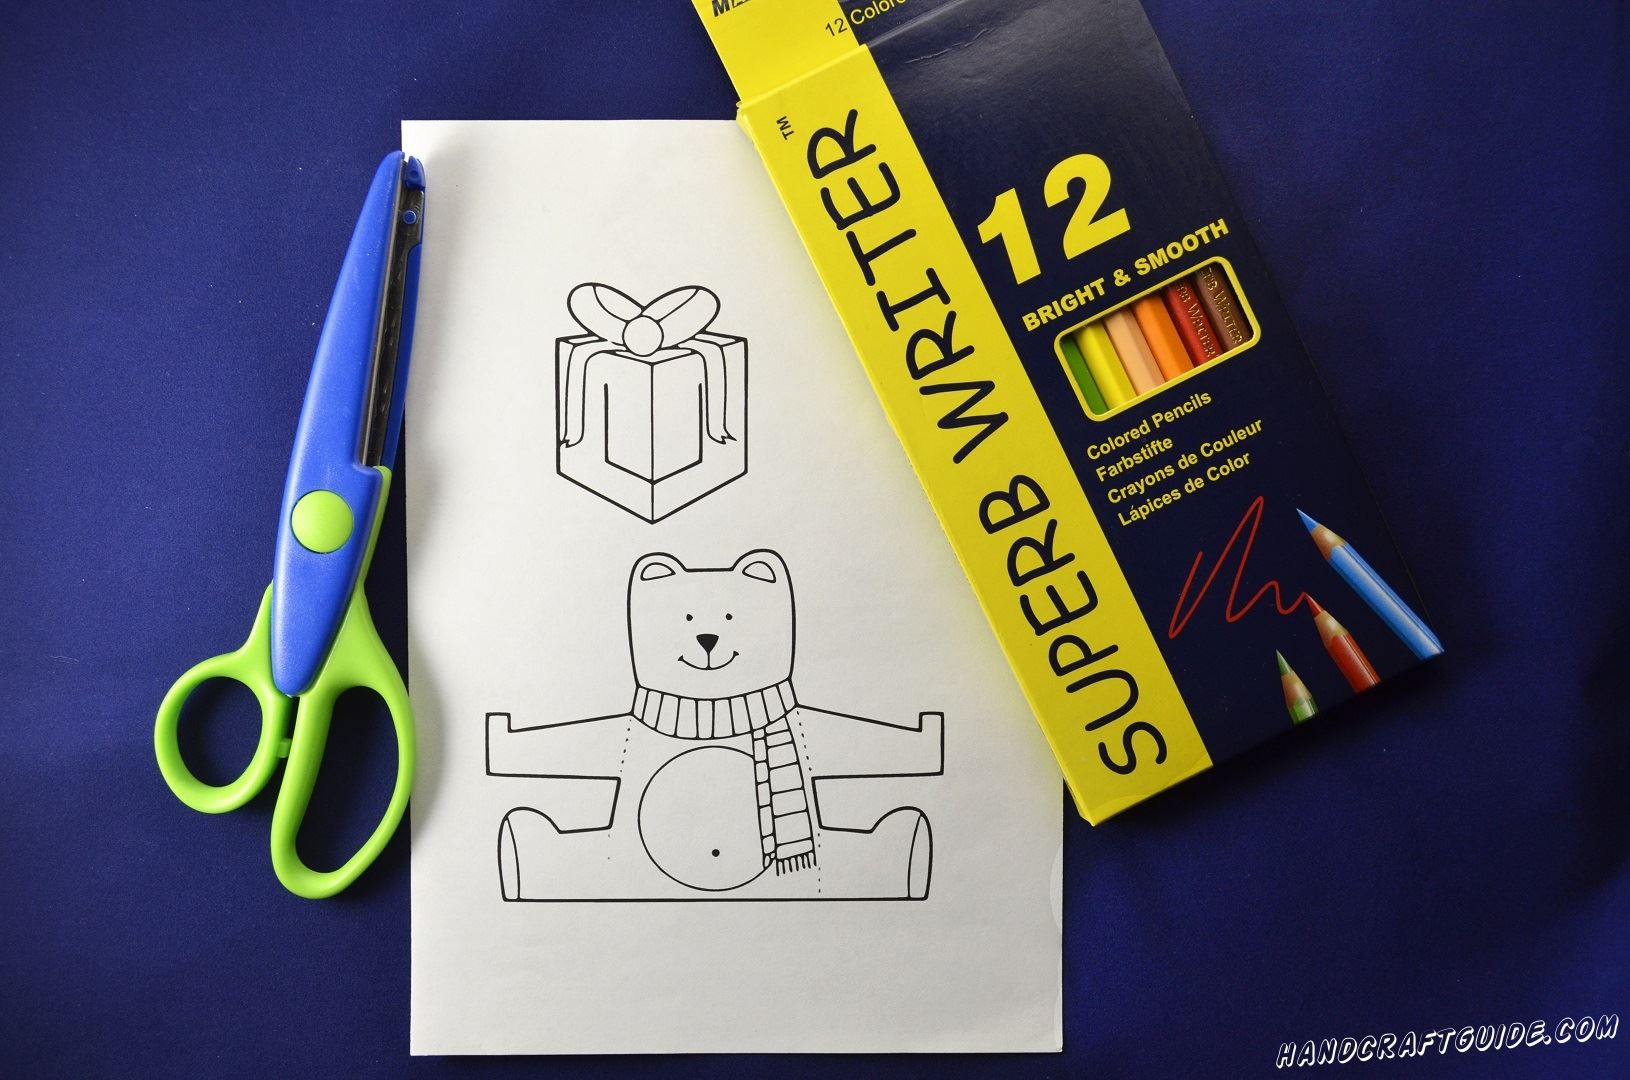 Давайте теперь разрисуем медвежонка и подарок, с помощью цветных карандашей.